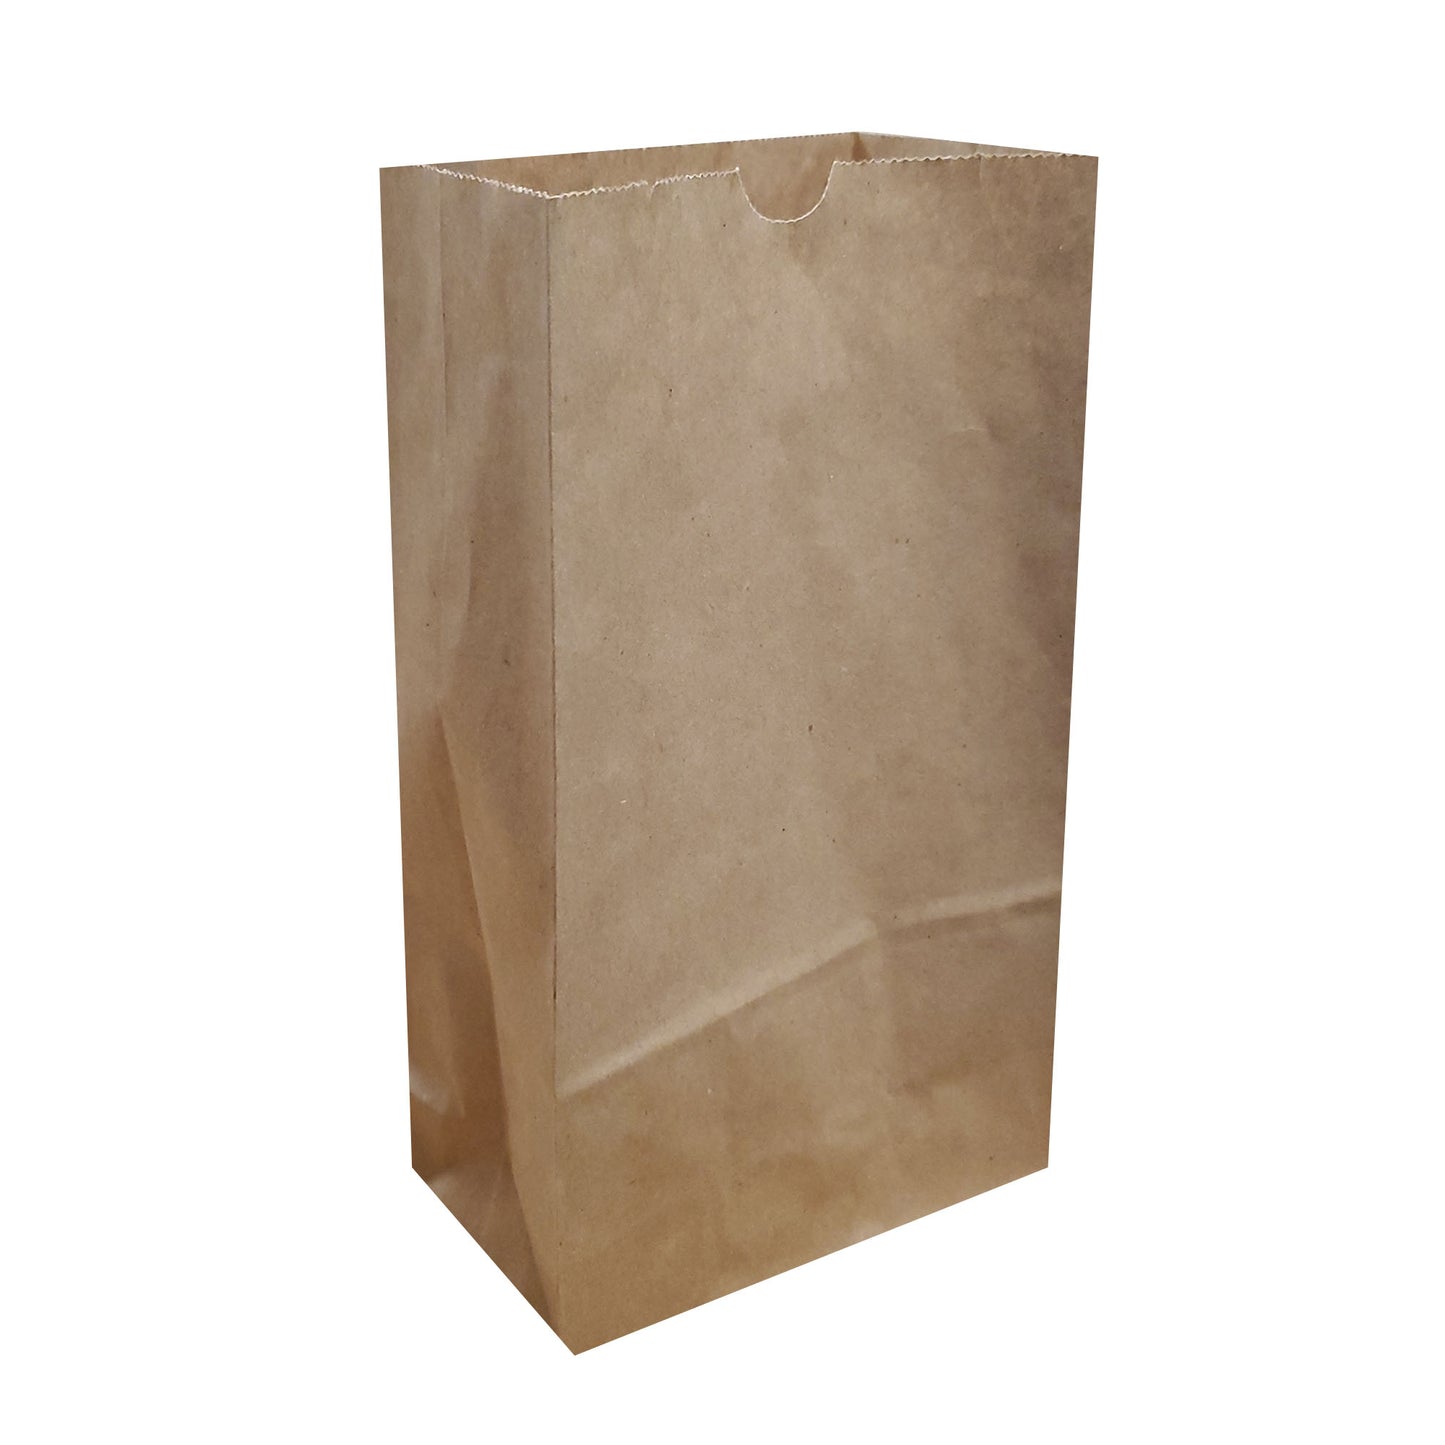 Luminaria Paper Bag, Tan - 24 Count